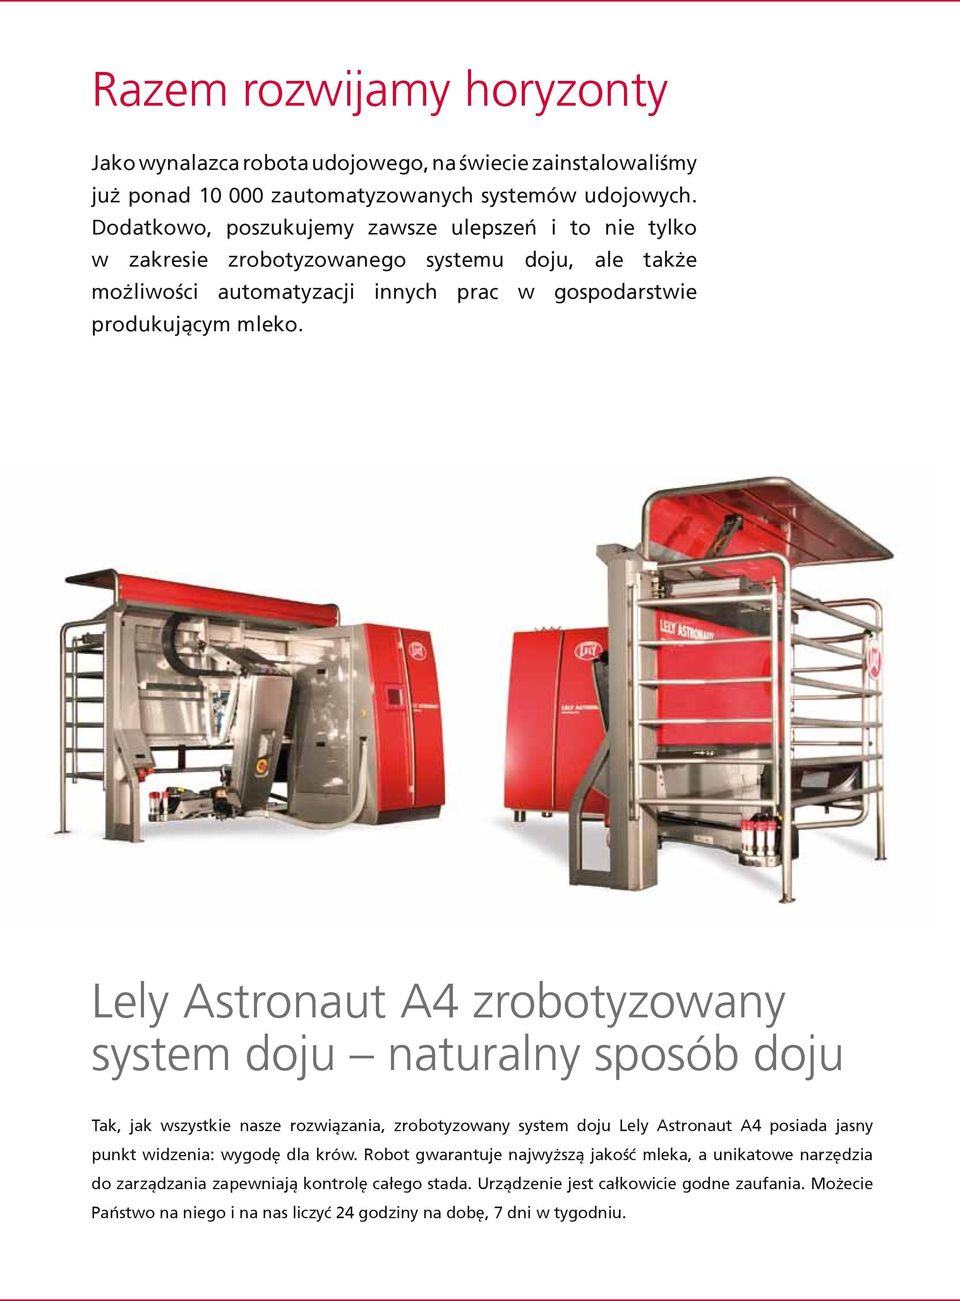 Lely Astronaut A4 zrobotyzowany system doju naturalny sposób doju Tak, jak wszystkie nasze rozwiązania, zrobotyzowany system doju Lely Astronaut A4 posiada jasny punkt widzenia: wygodę